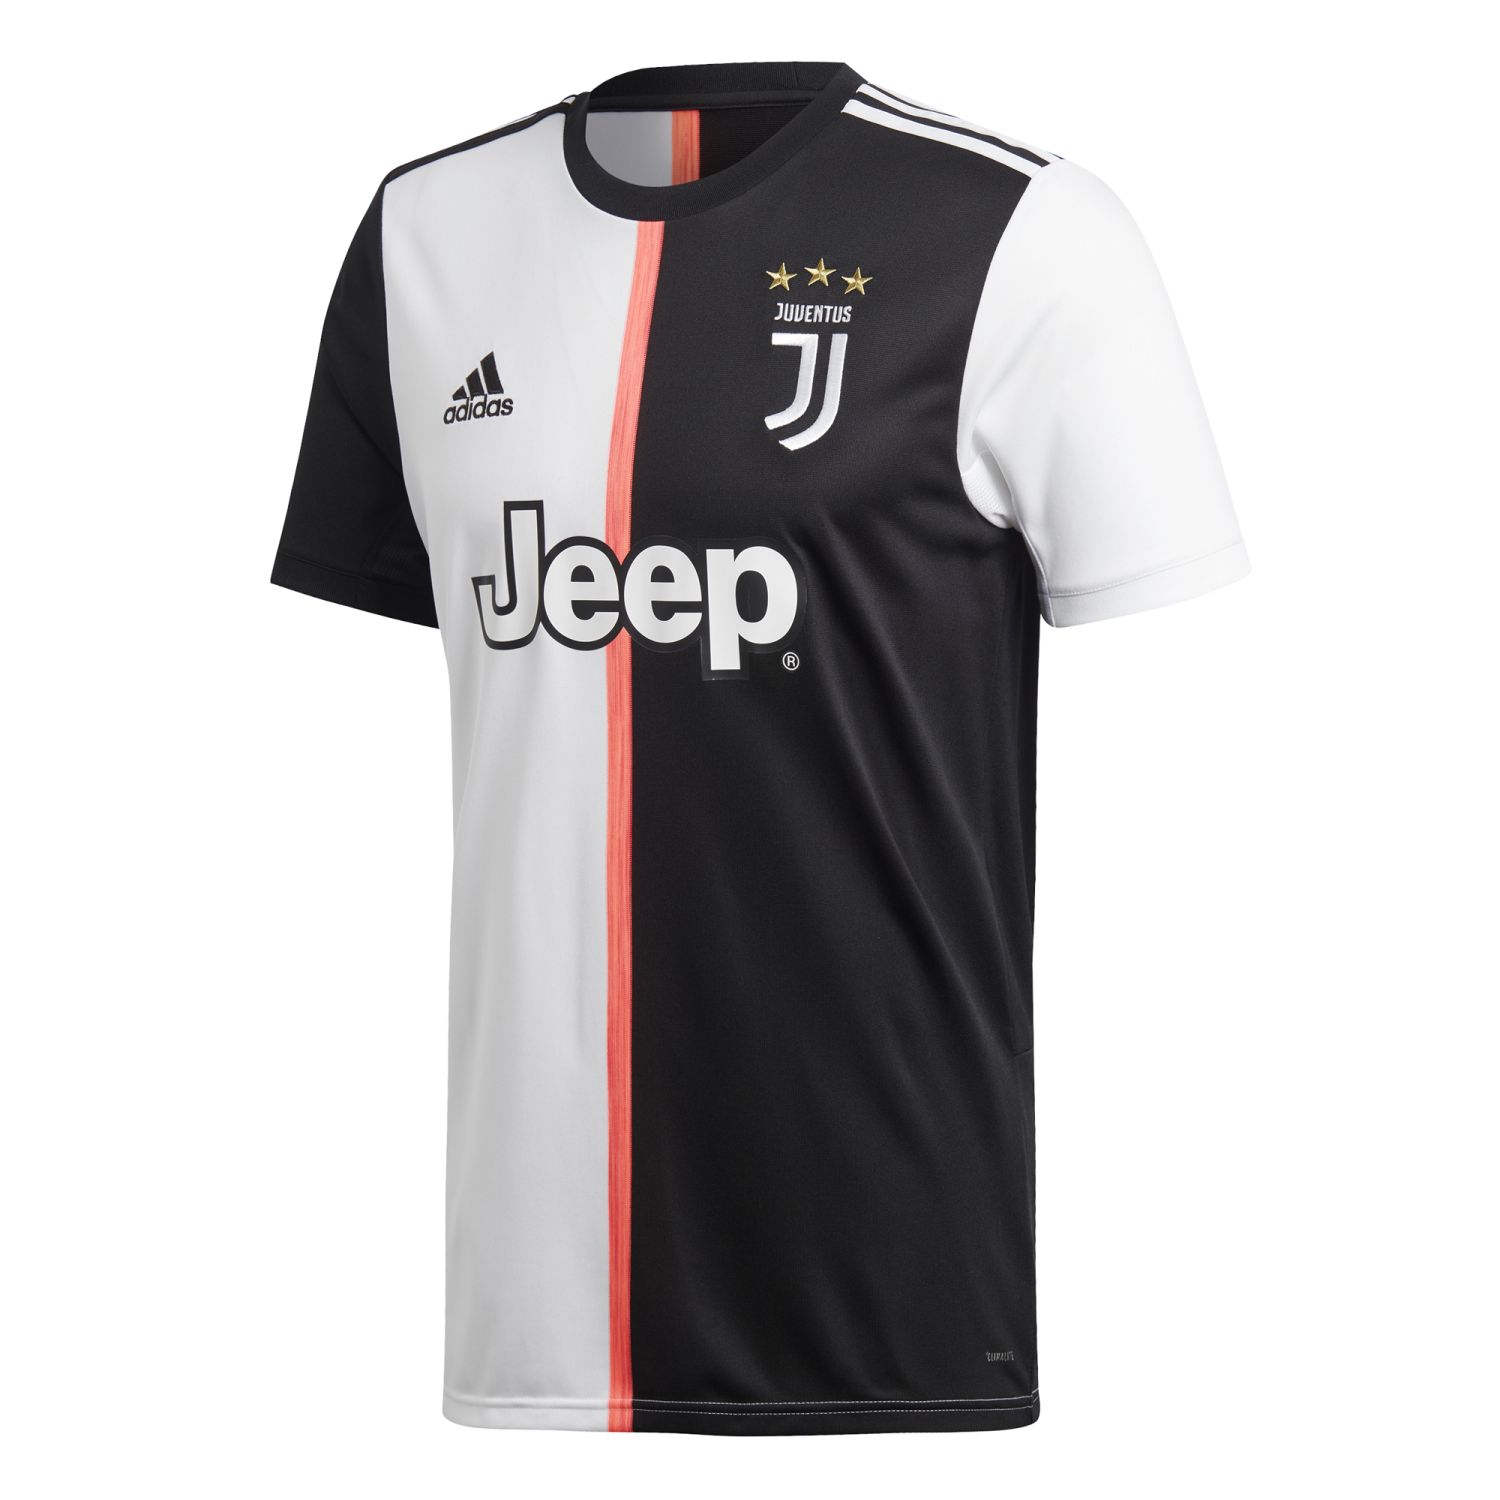 Juventus Turin Jersey 2019-20